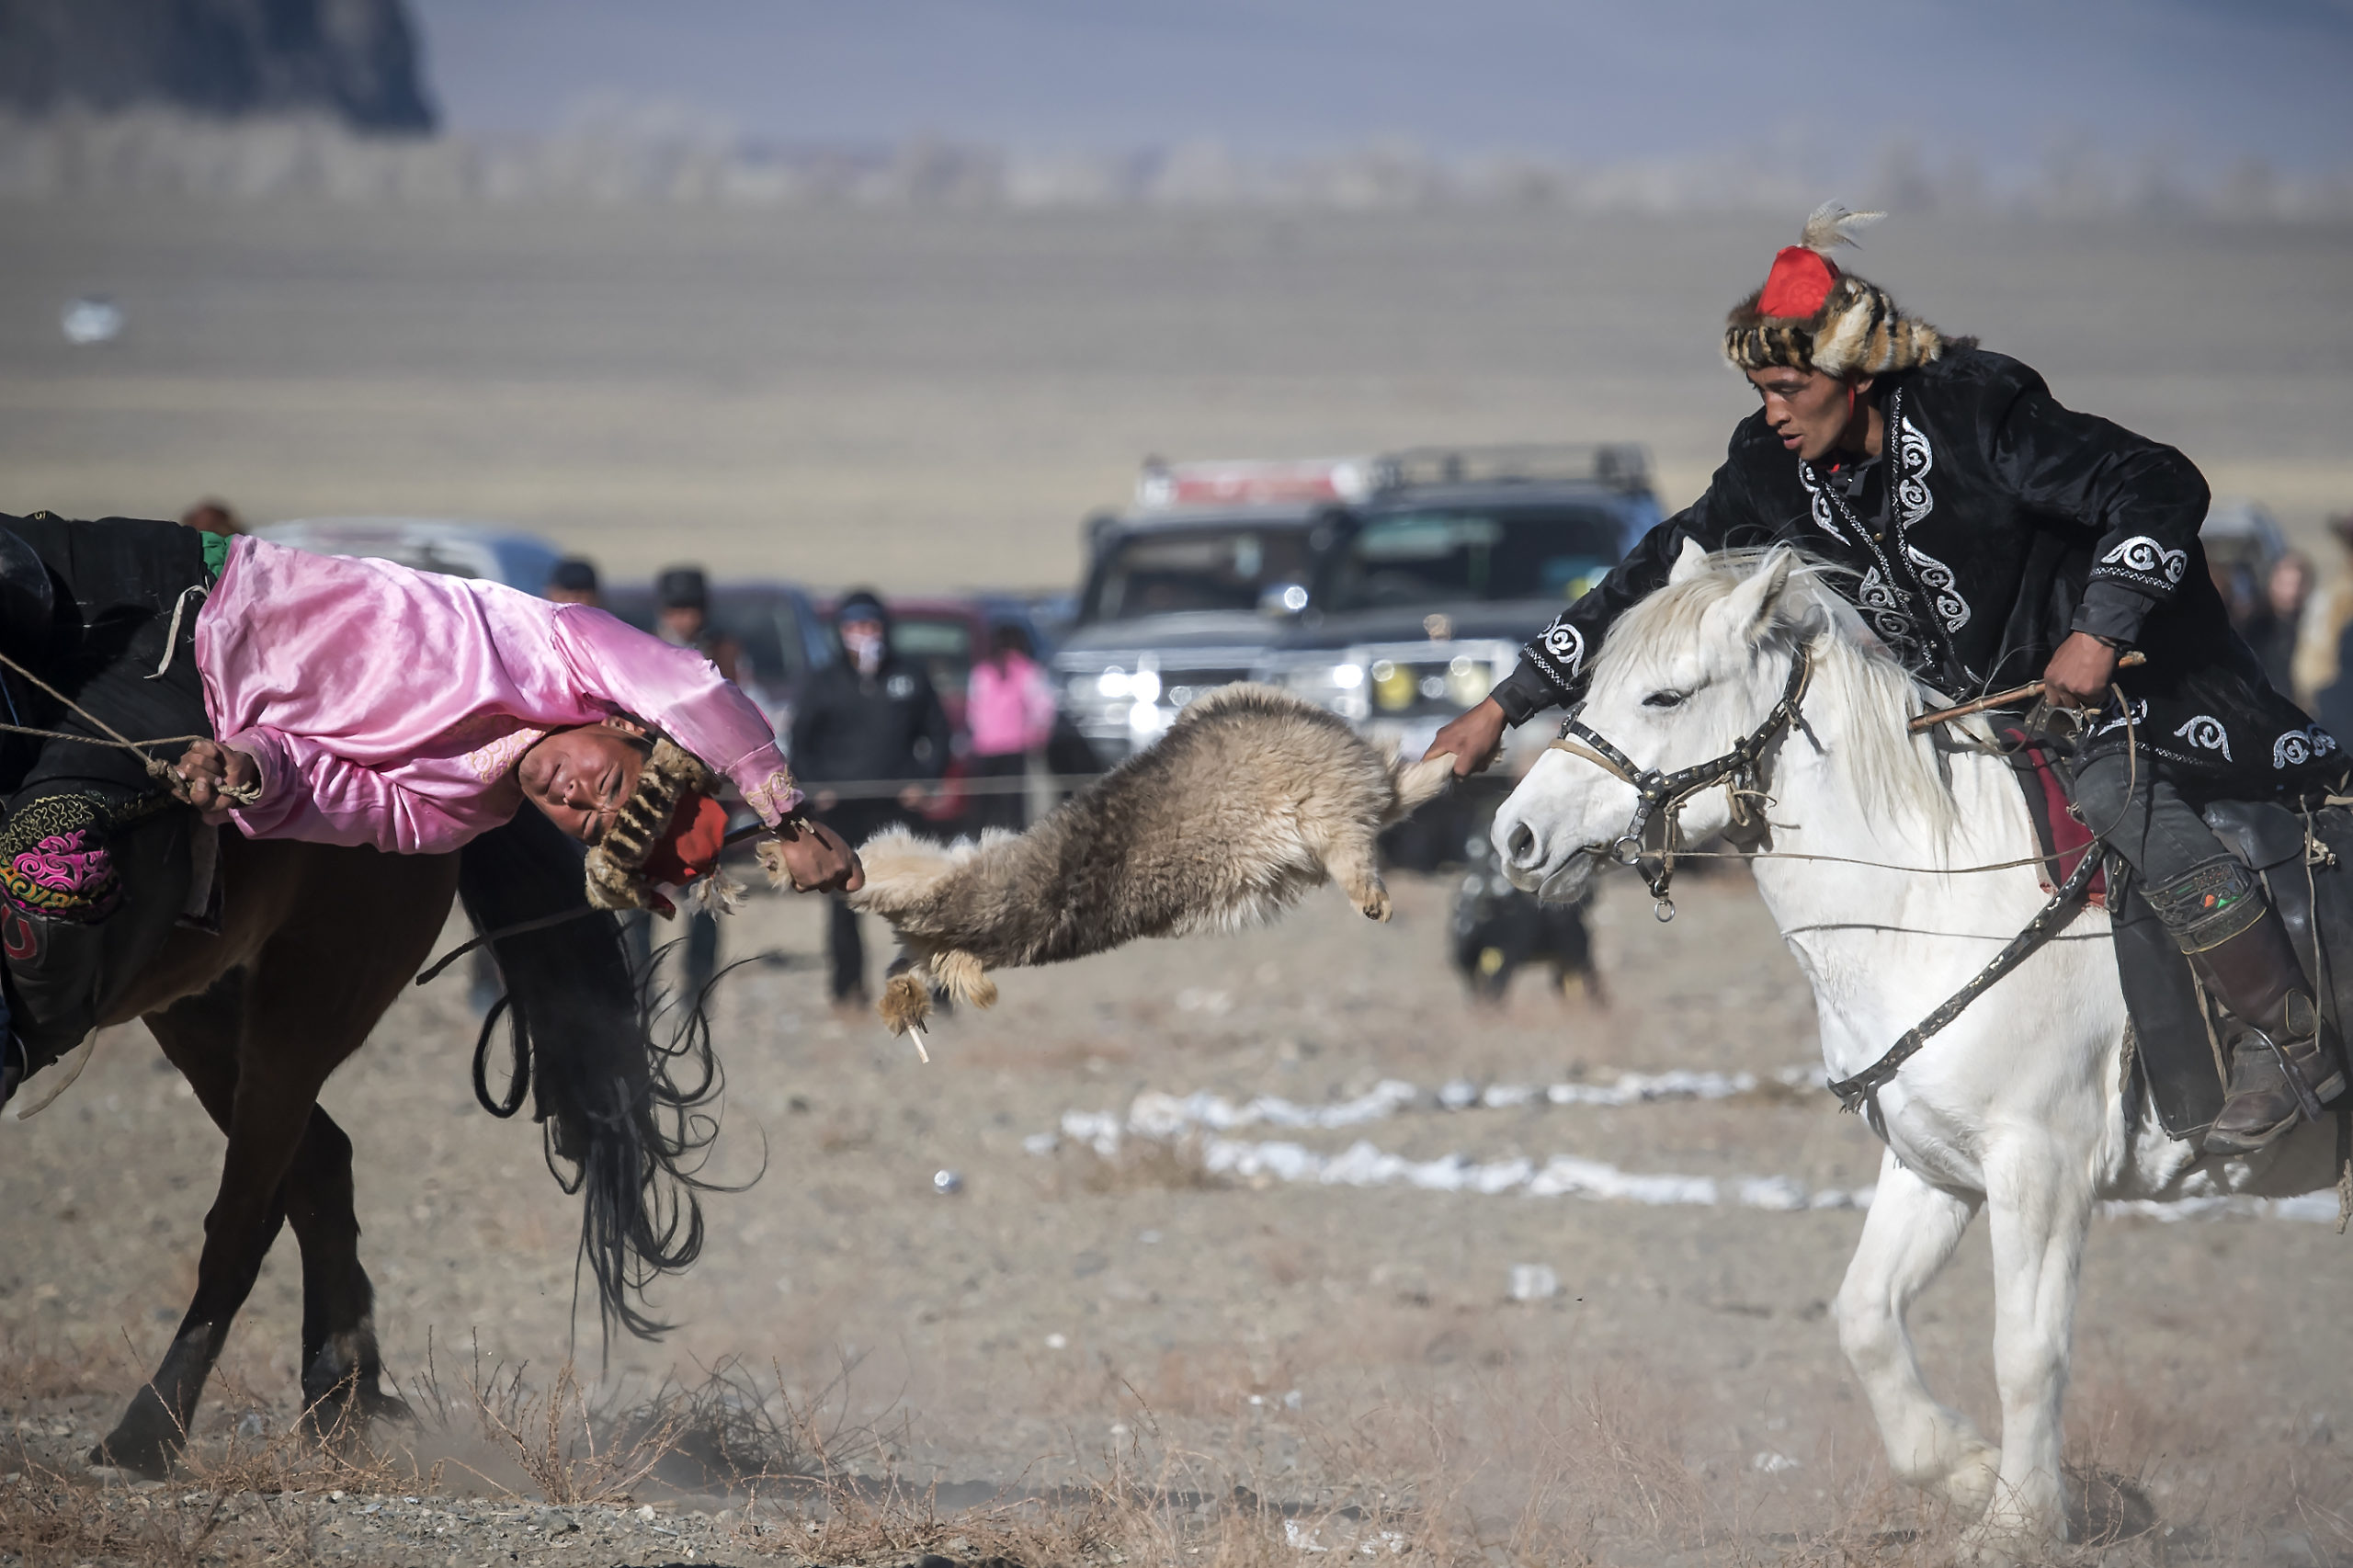 6.7.10.2018. Olgyi; Festival des aigles en Mongolie. Une des epreuves du week end est une sorte de Bushkashi appele Kykbar en Mongolie. Un duel entre deux cavaliers qui se disputent une carcasse de chevre Photo Jean-Guy Python